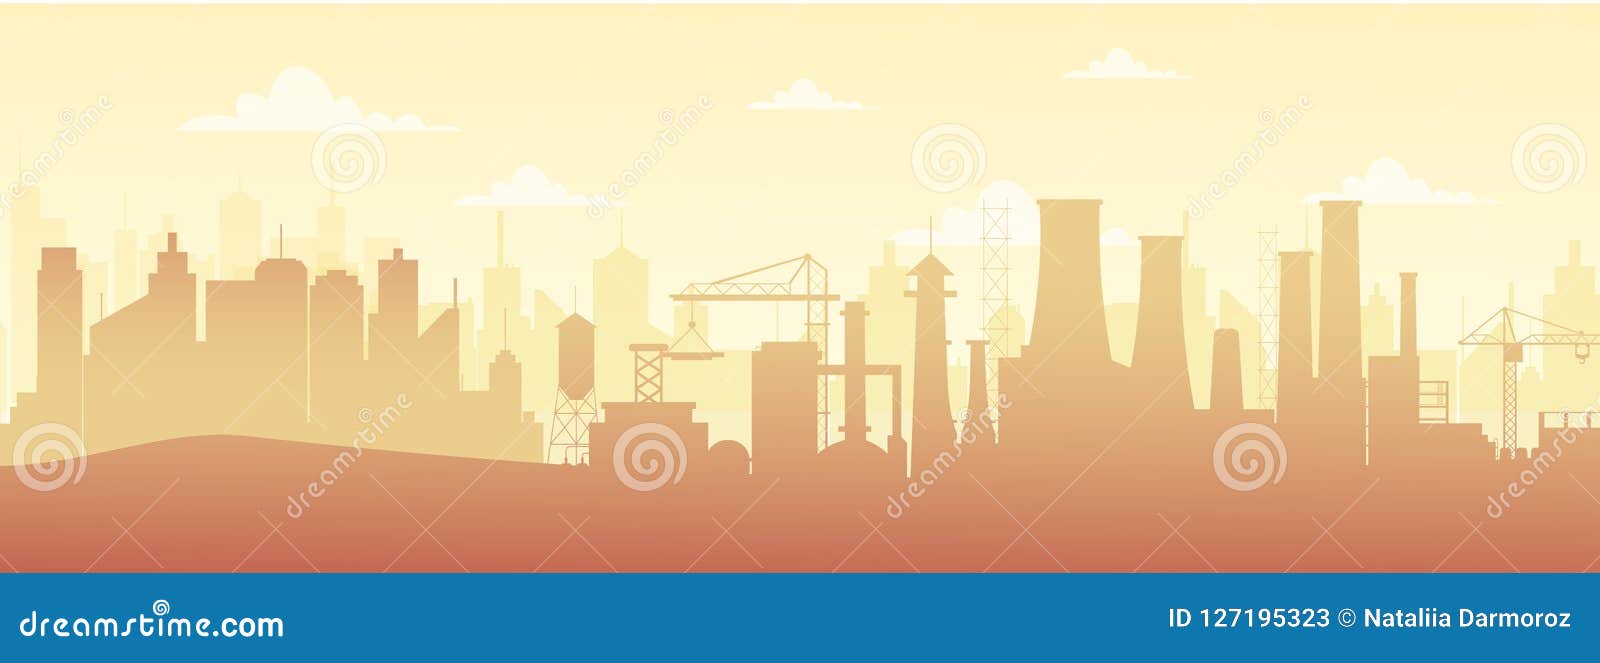 Wektorowa ilustracja panoramiczny przemysłowy sylwetka krajobraz z fabrycznymi budynkami i zanieczyszczenie w mieszkaniu projektujemy